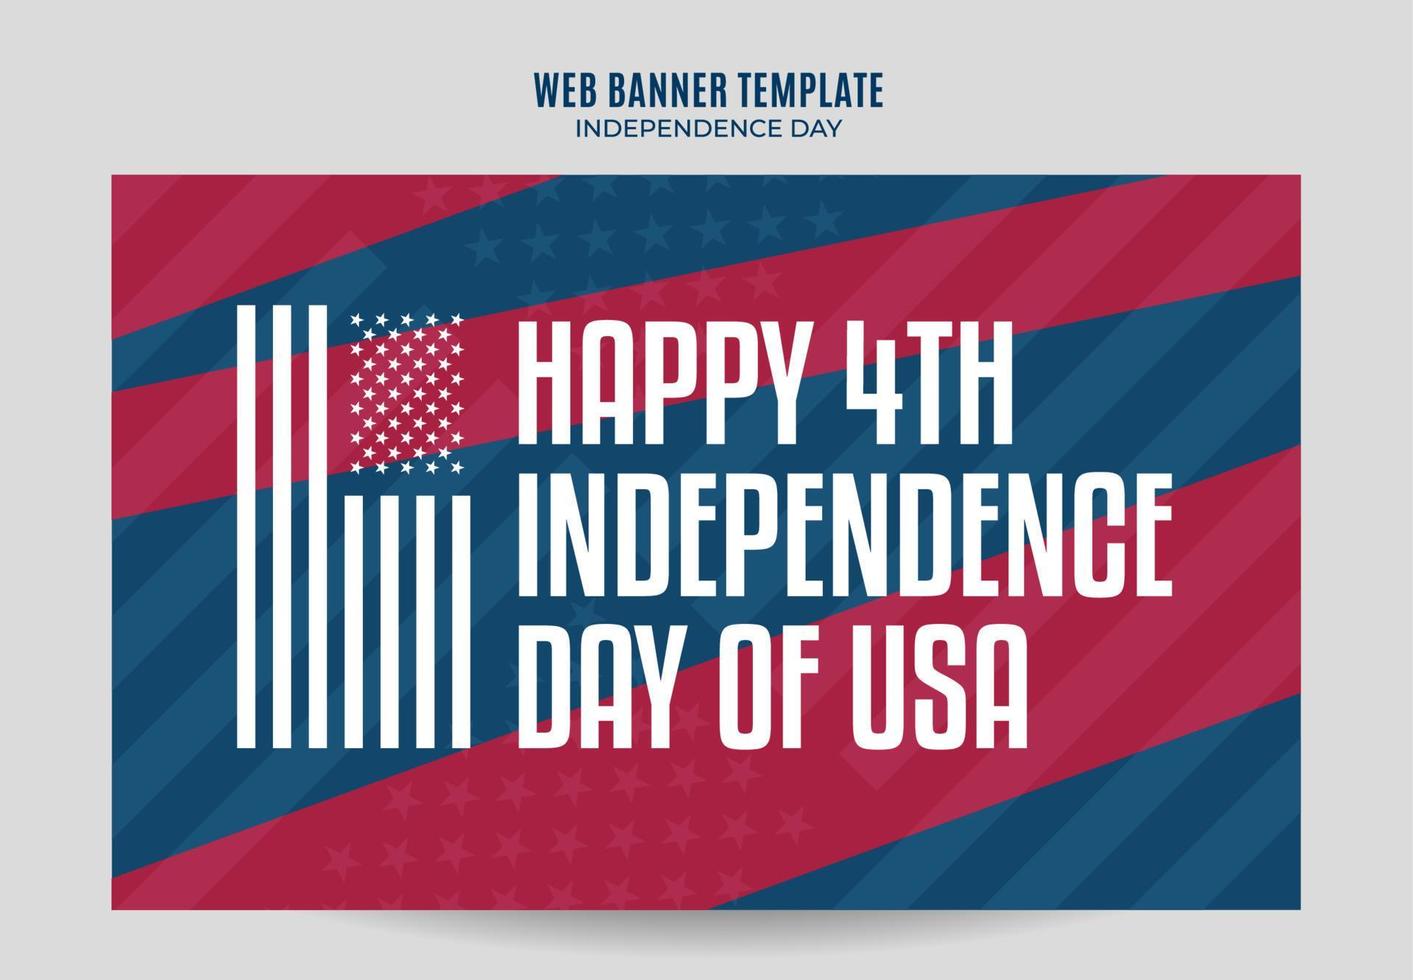 feliz 4 de julho - banner da web dos eua do dia da independência para pôster de mídia social, banner, área espacial e plano de fundo vetor